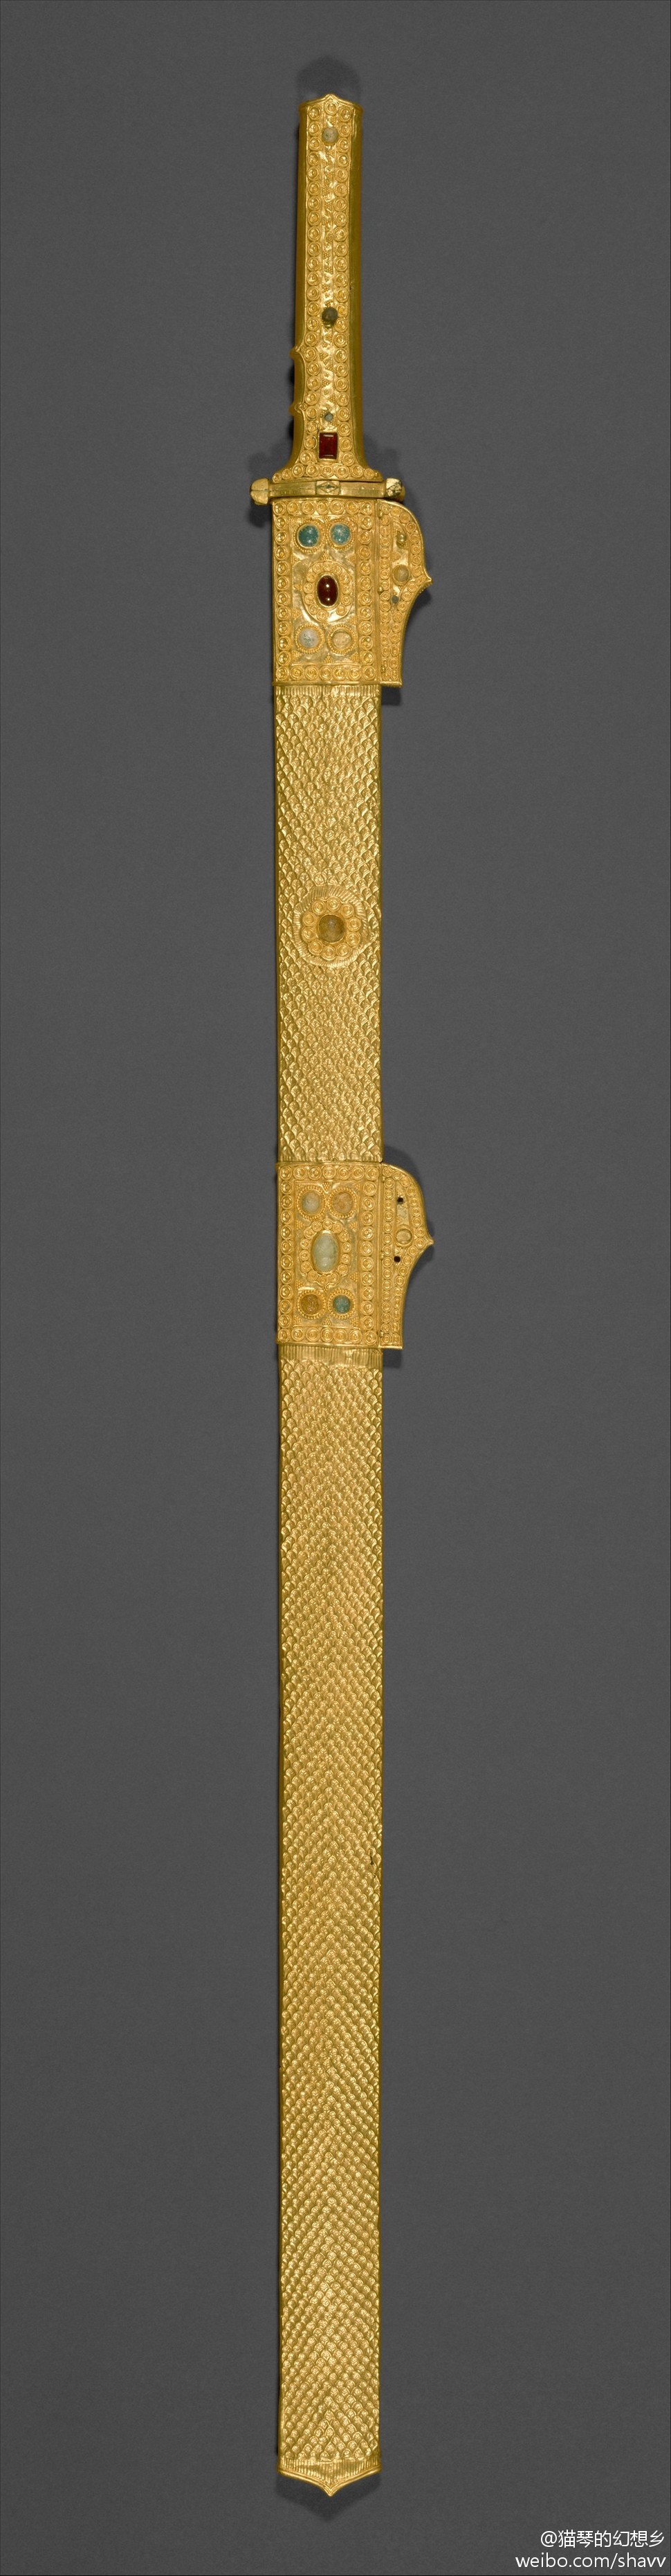 剑和剑鞘,约公元第七世纪伊朗.萨珊.大都会艺术博物馆纽约.